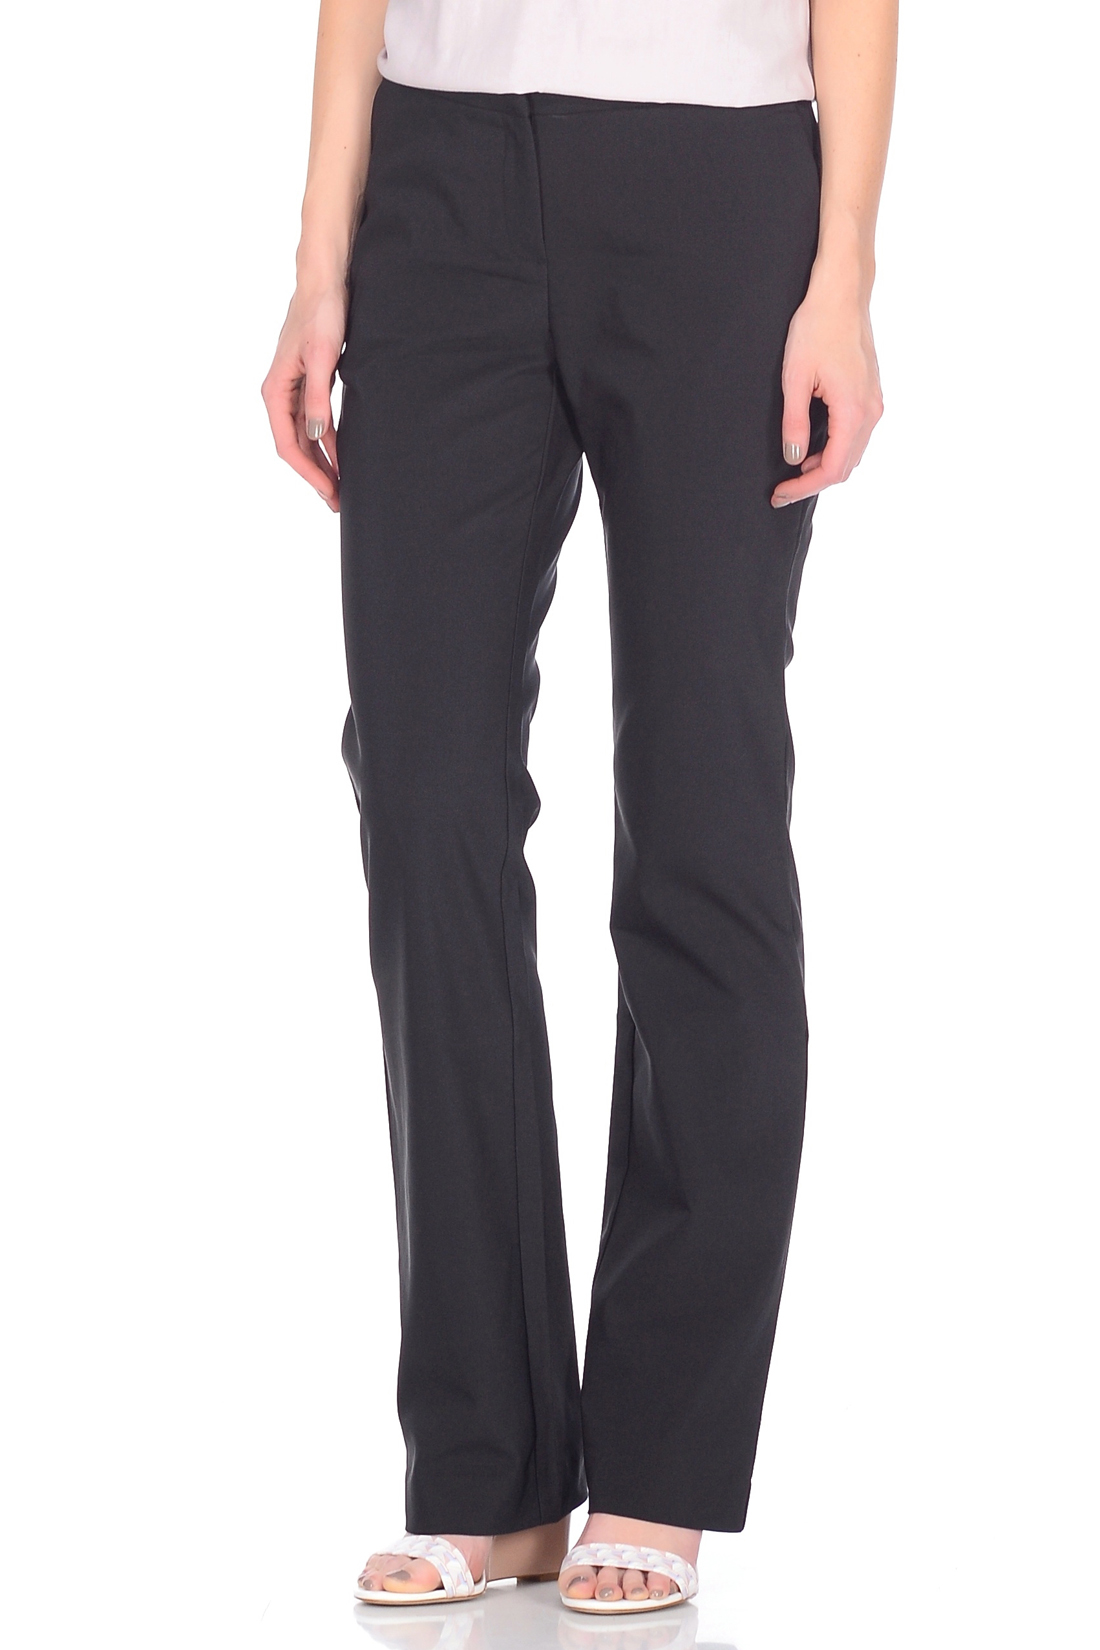 Классические брюки-клёш (арт. baon B298009), размер XS, цвет черный Классические брюки-клёш (арт. baon B298009) - фото 1